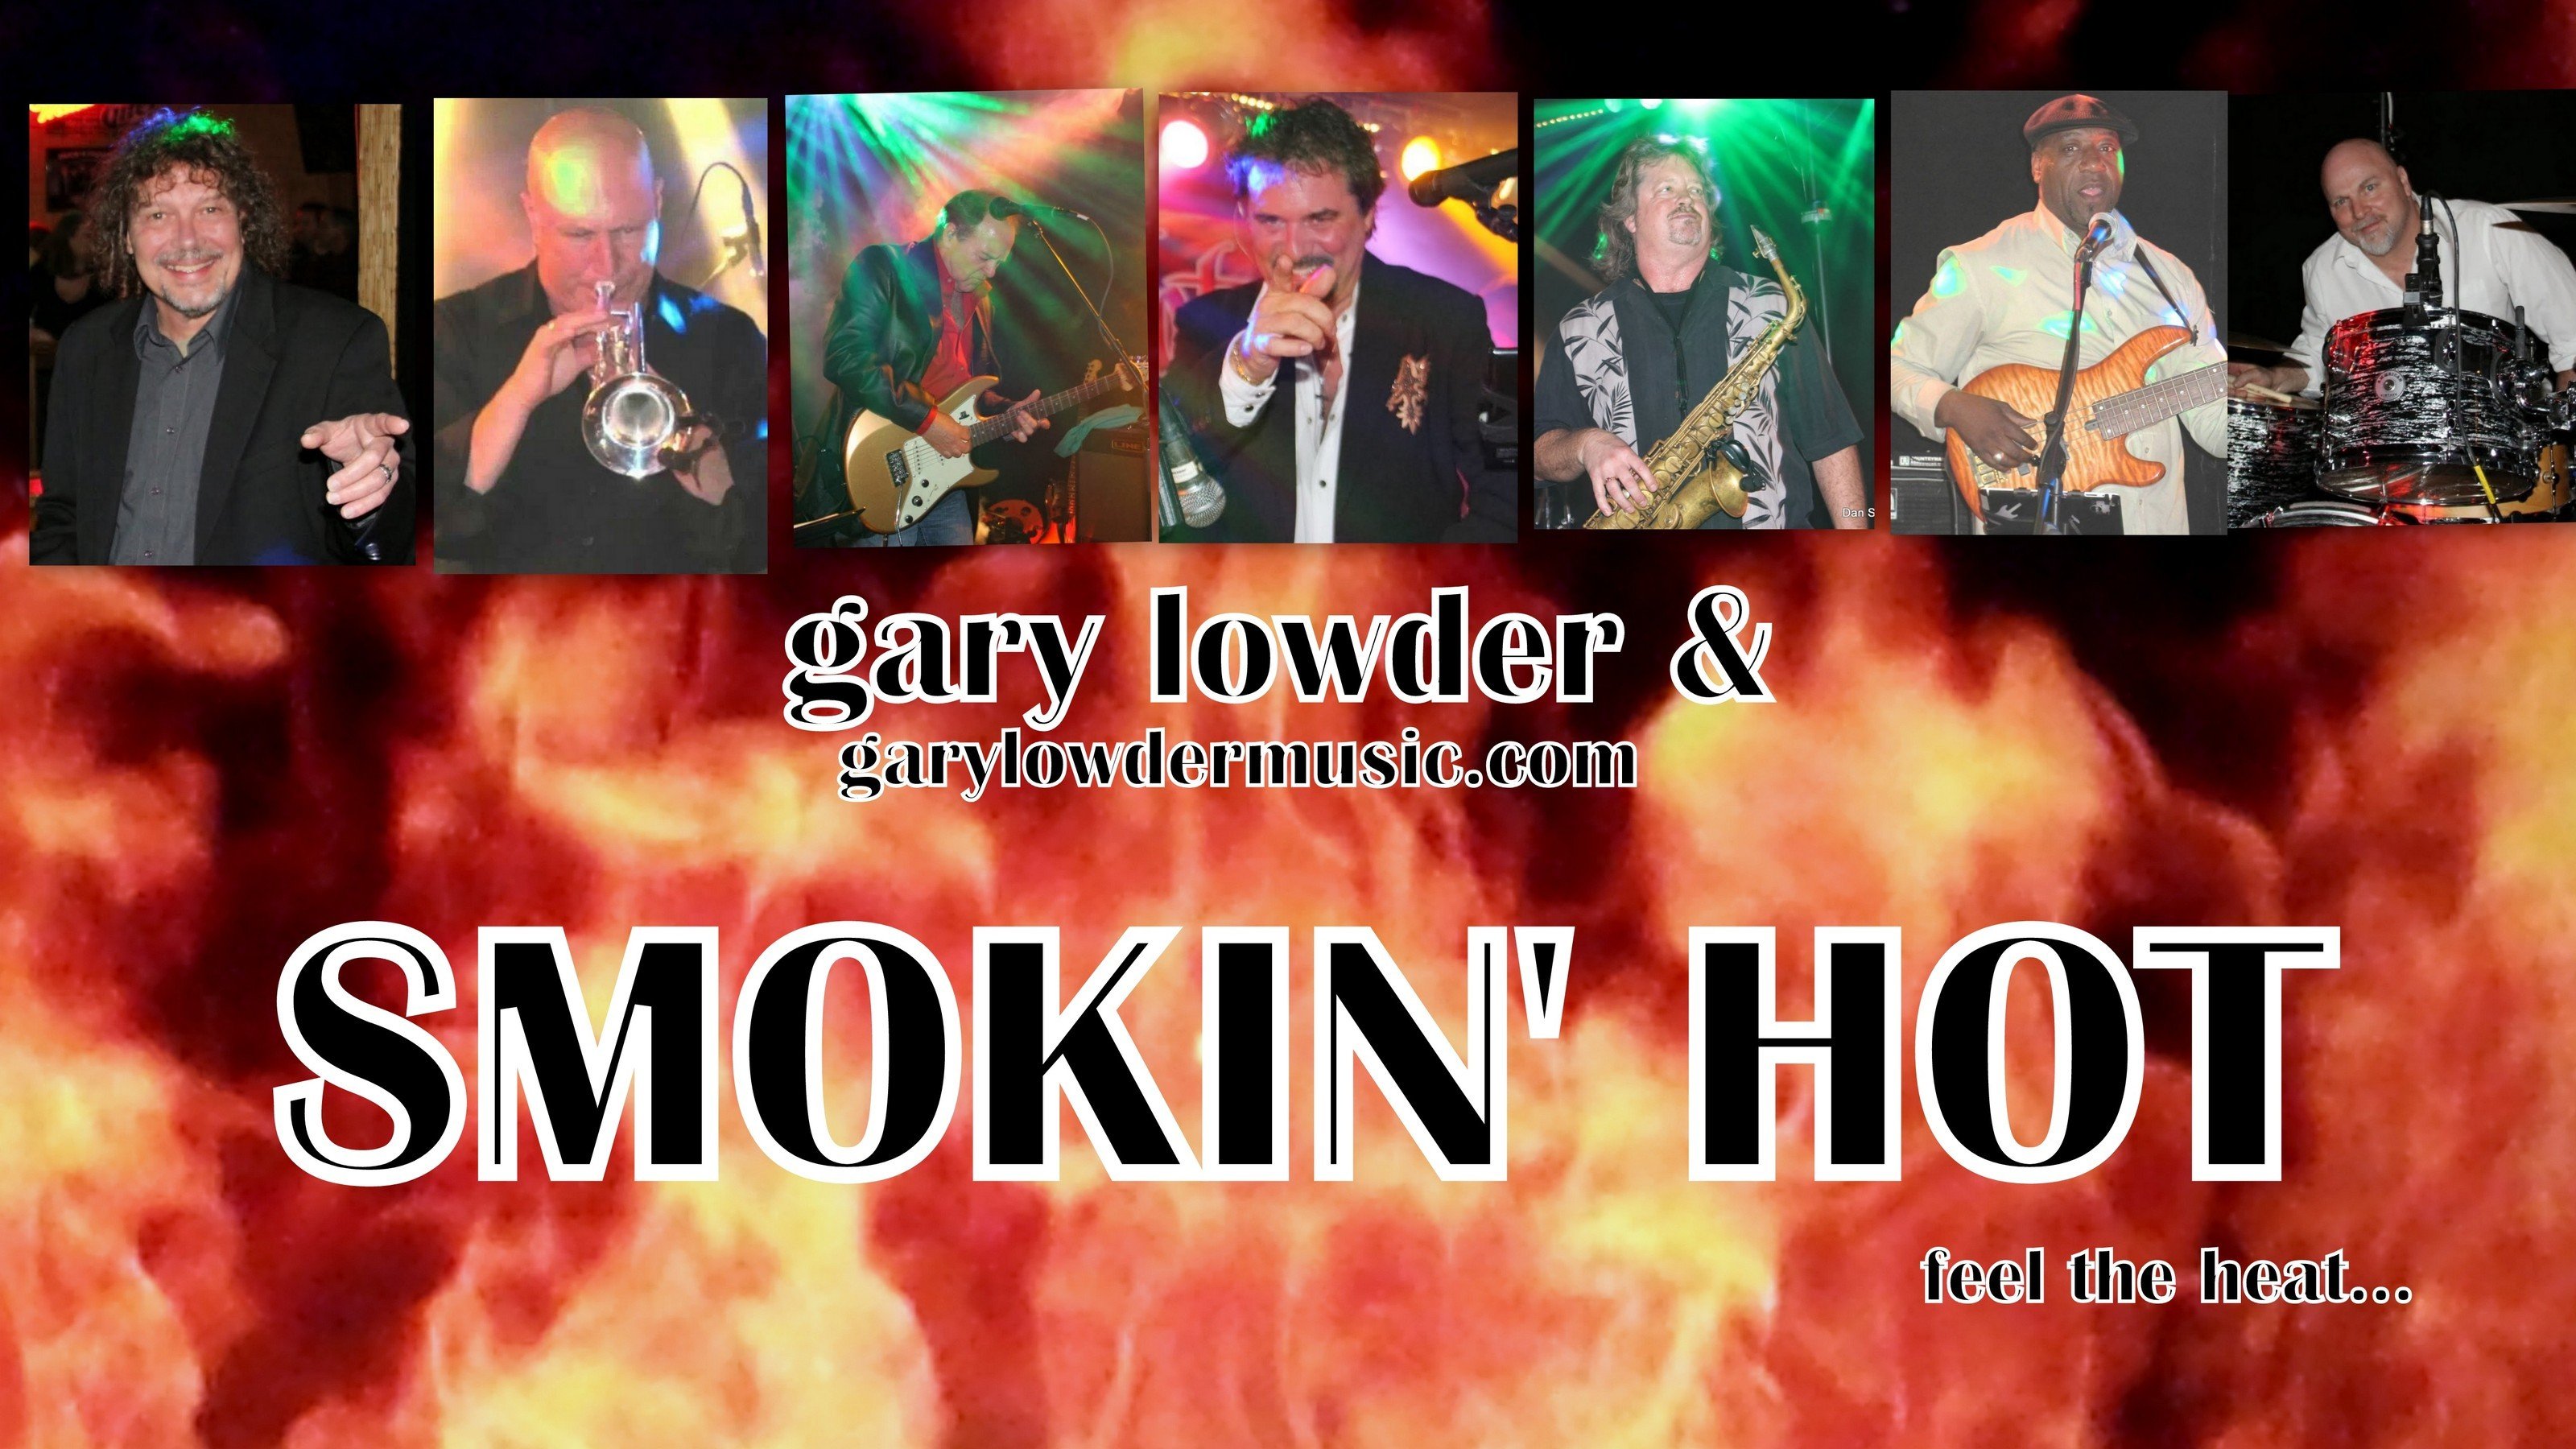 GARY LOWDER & SMOKIN' HOT - ABOUT THE BAND